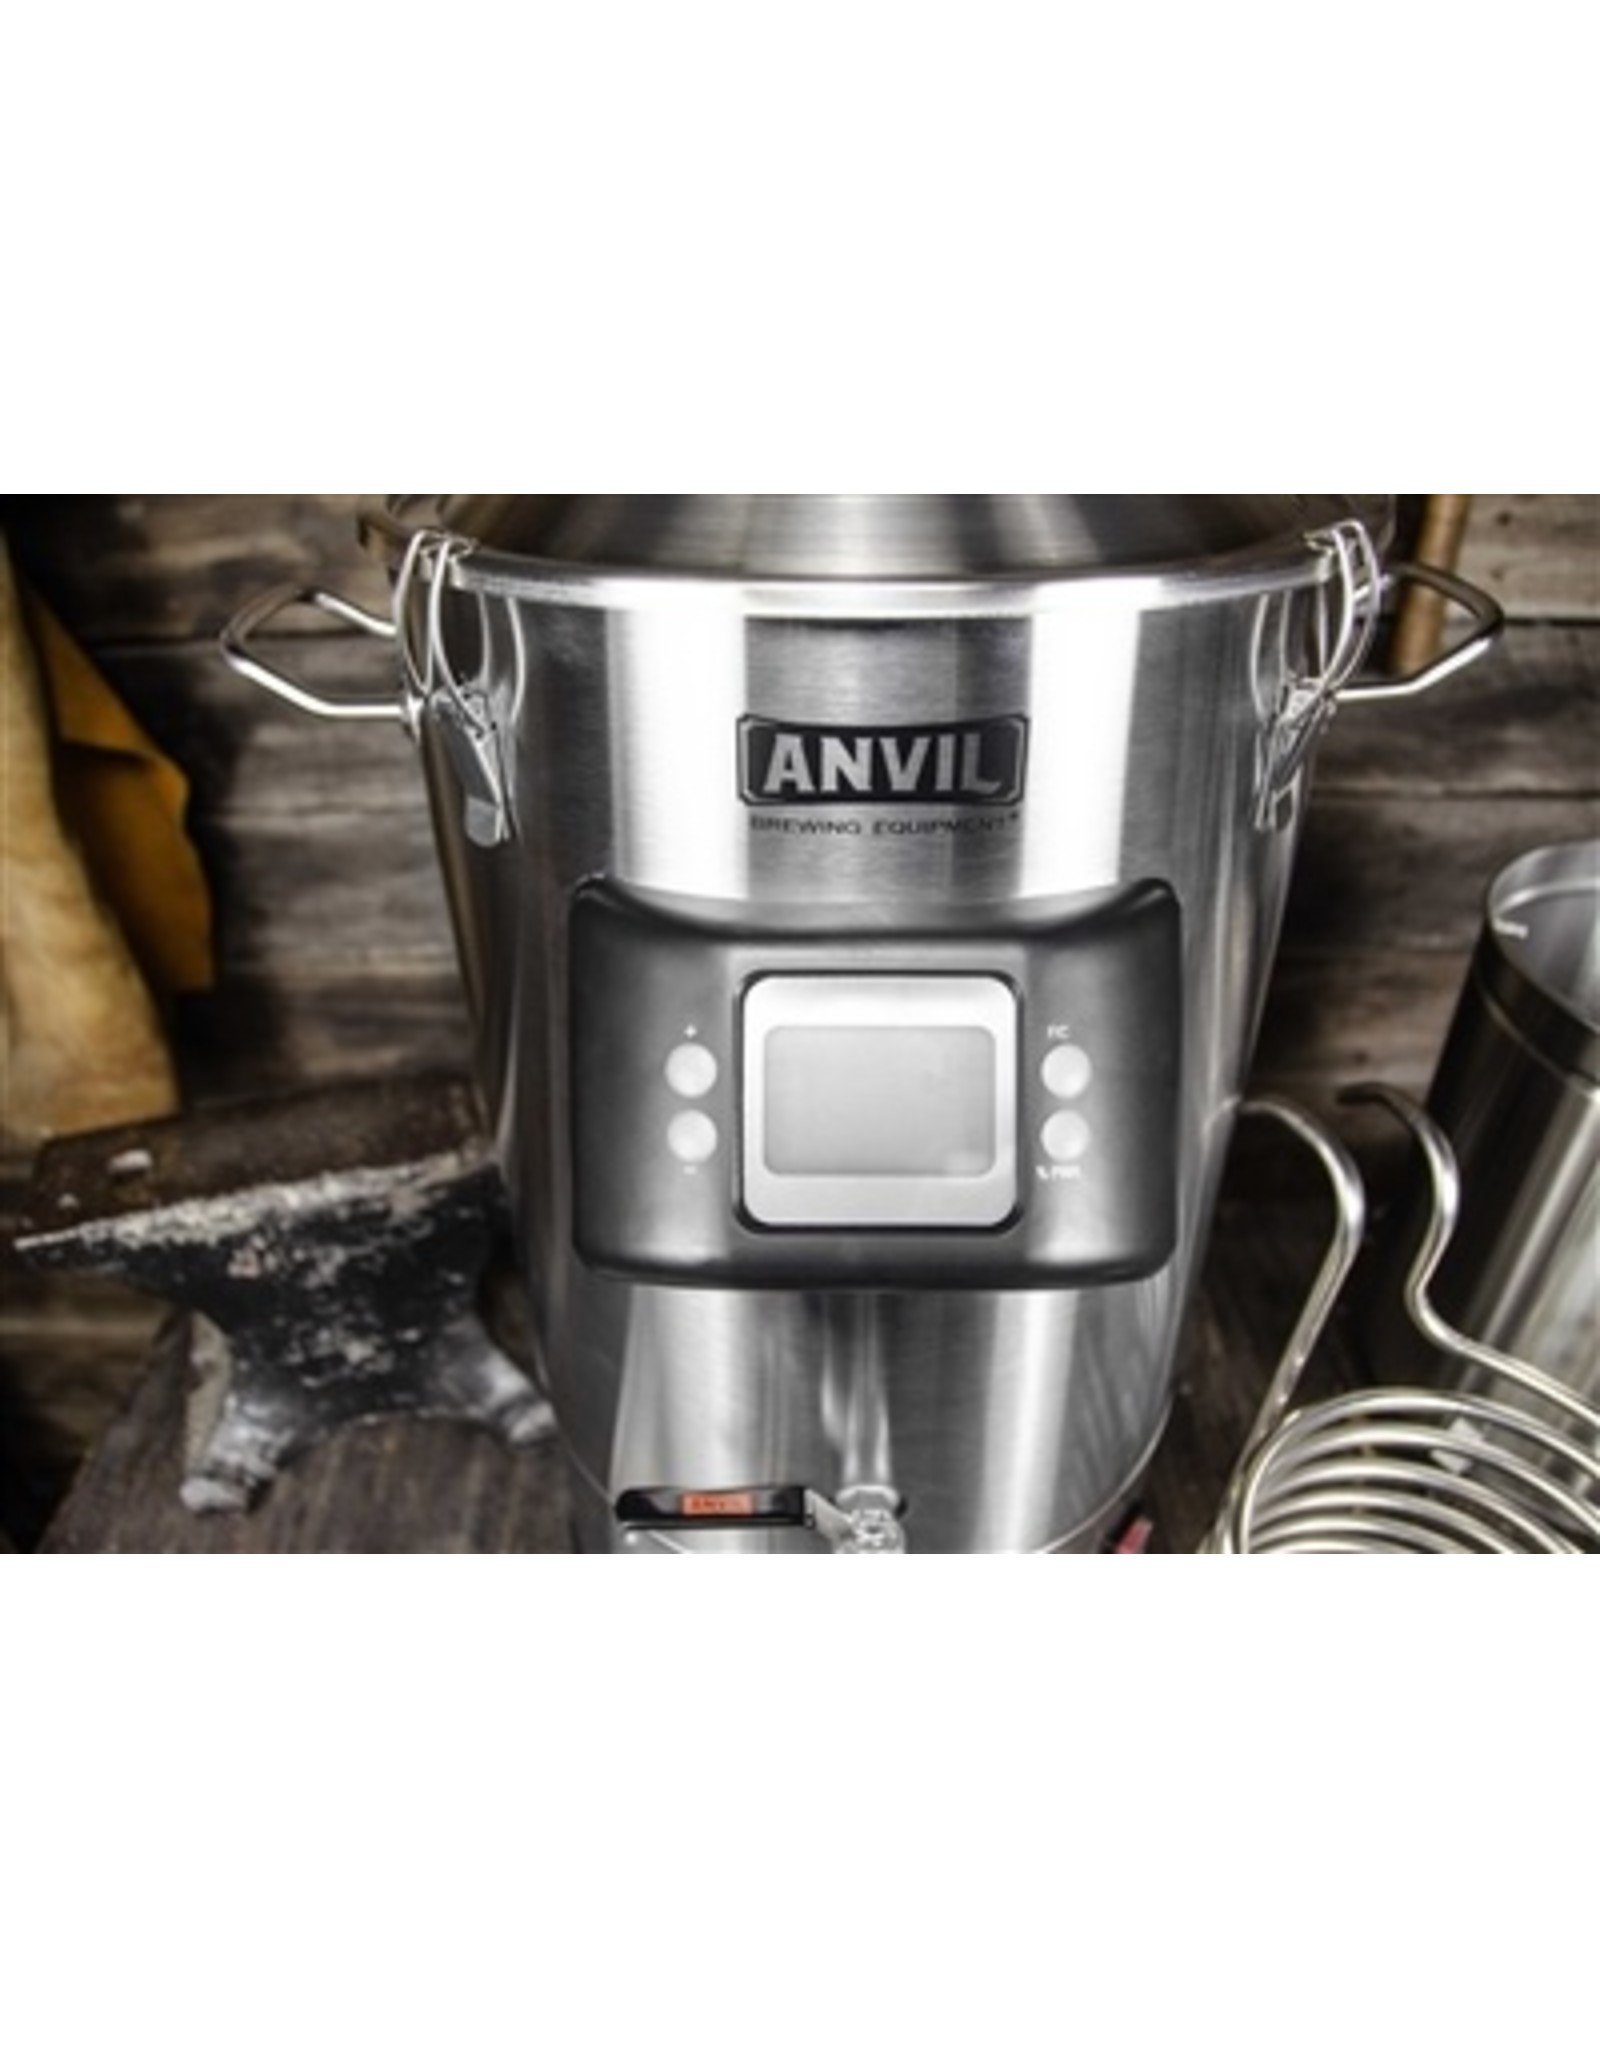 anvil foundry 240v plug